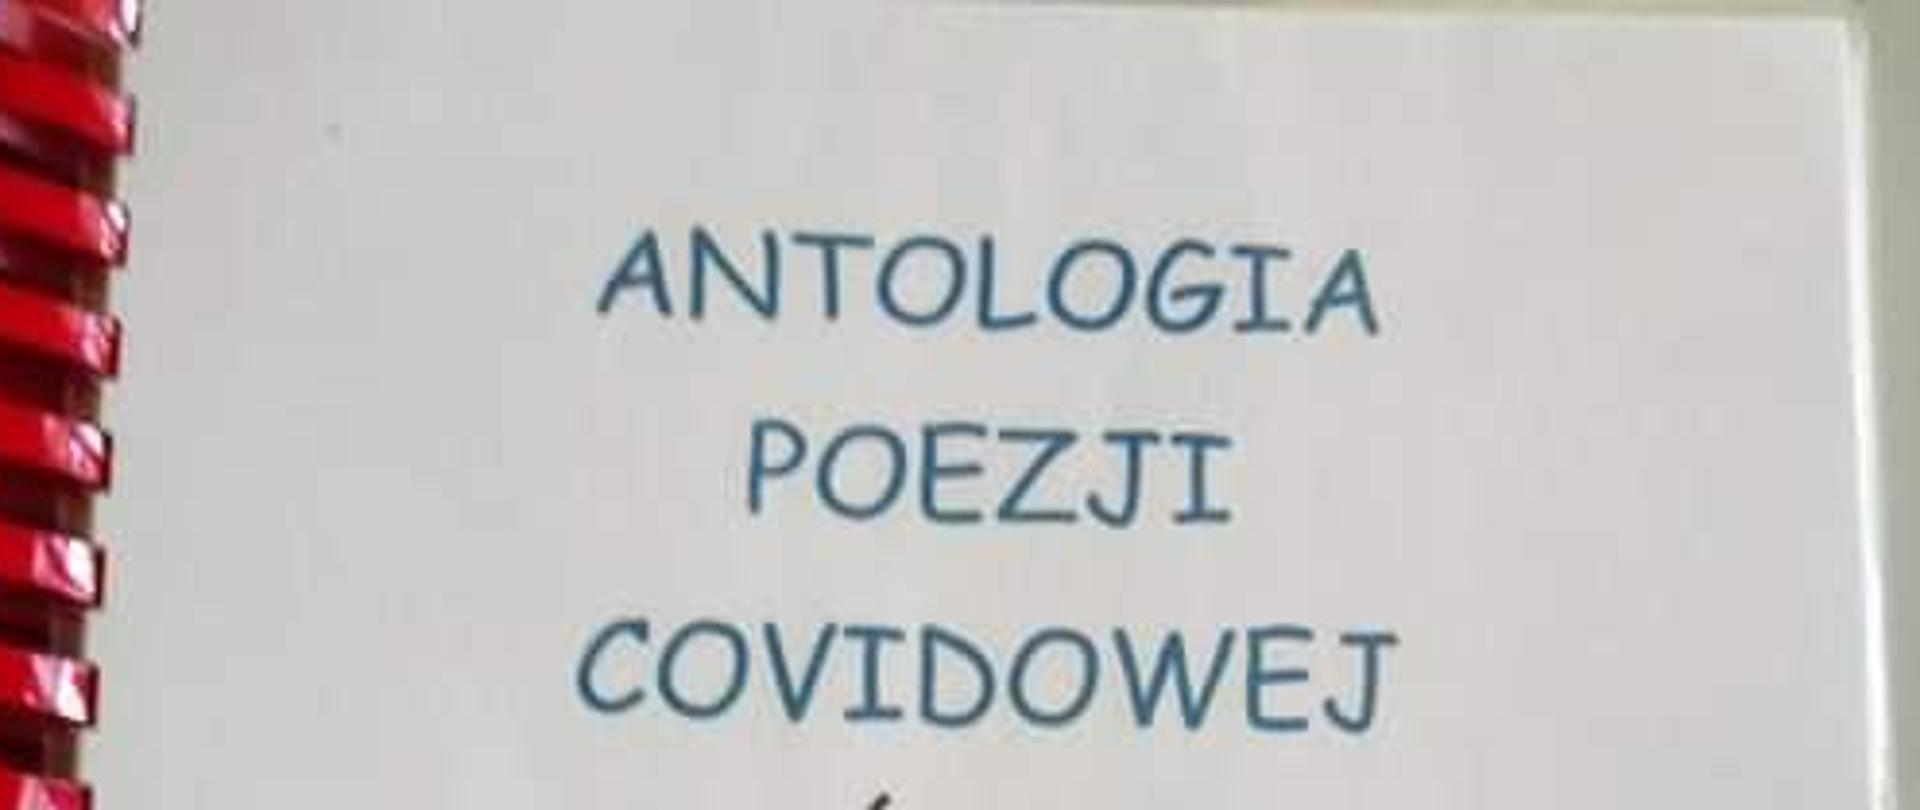 Antologia Poezji Covidowej, SP nr 36 w Sosnowcu